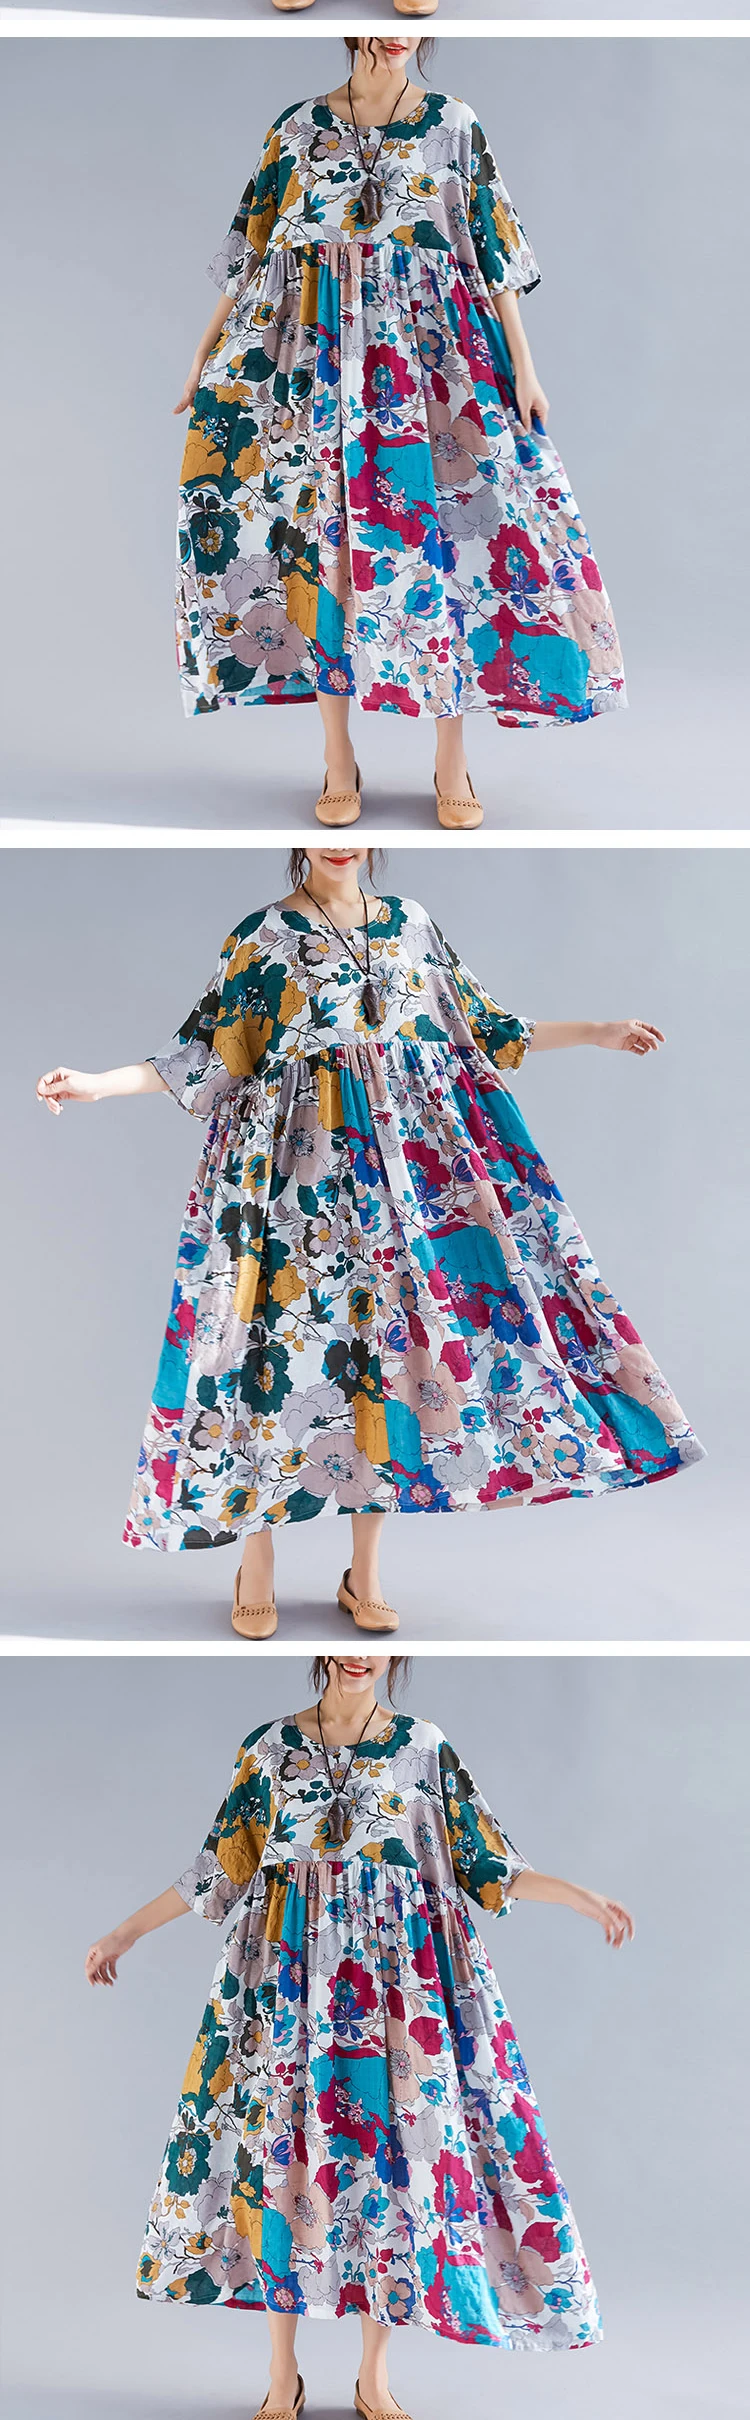 DIMANAF размера плюс, женское пляжное платье, летний сарафан, льняное женское платье, элегантное женское Свободное платье с цветочным принтом, большой размер 5XL 6XL